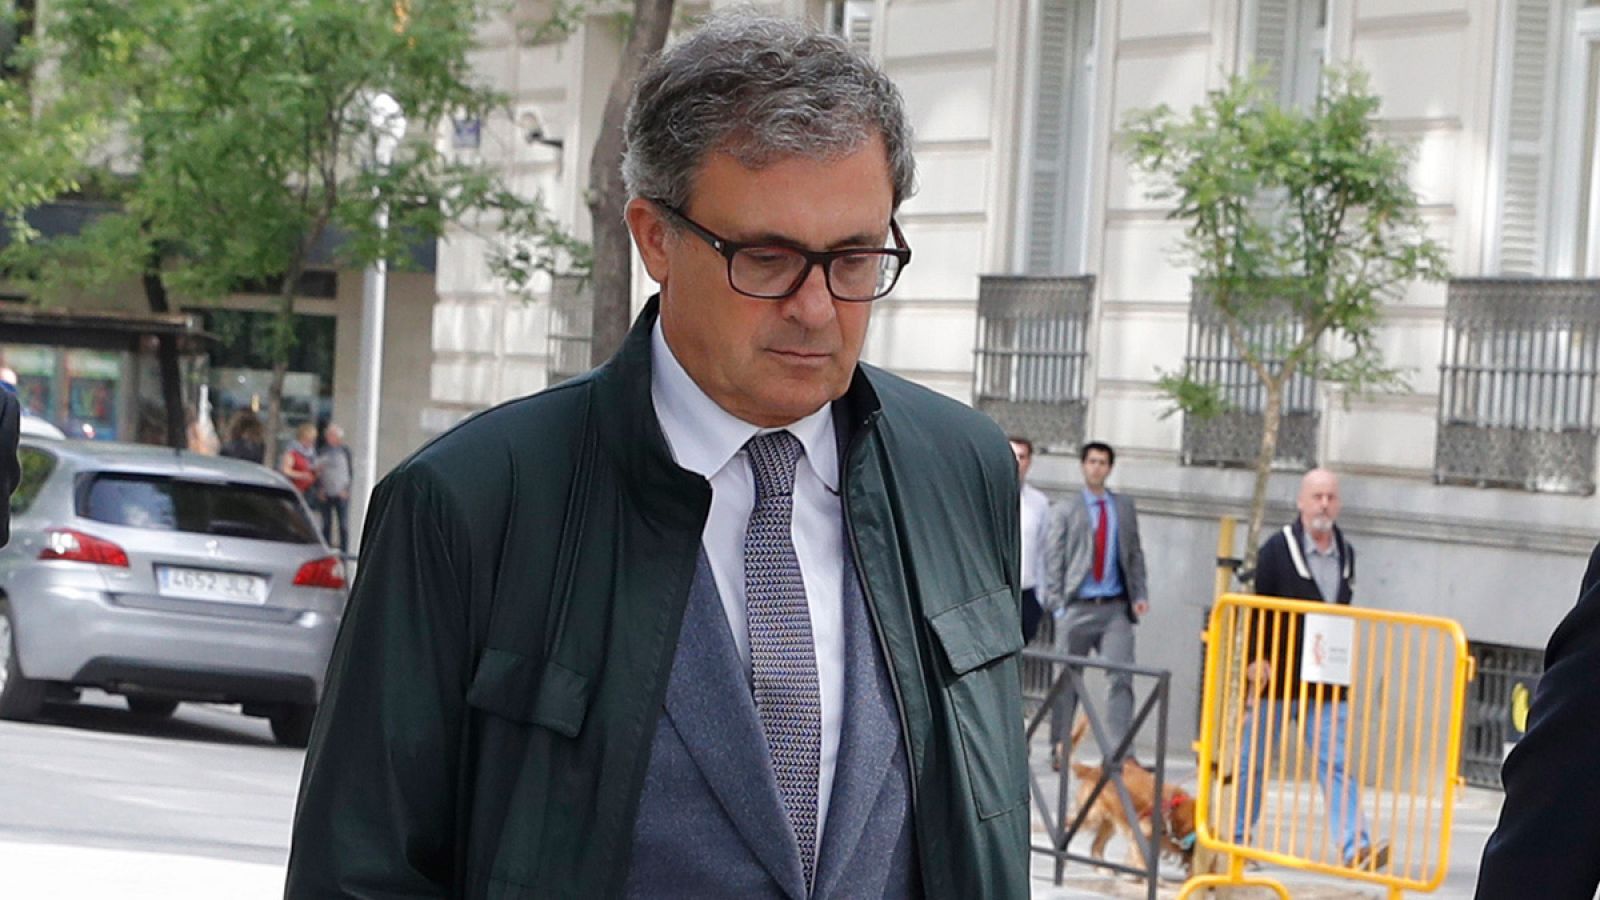 Jordi Pujol Ferrusola, el hijo mayor del expresidente catalán Jordi Pujol